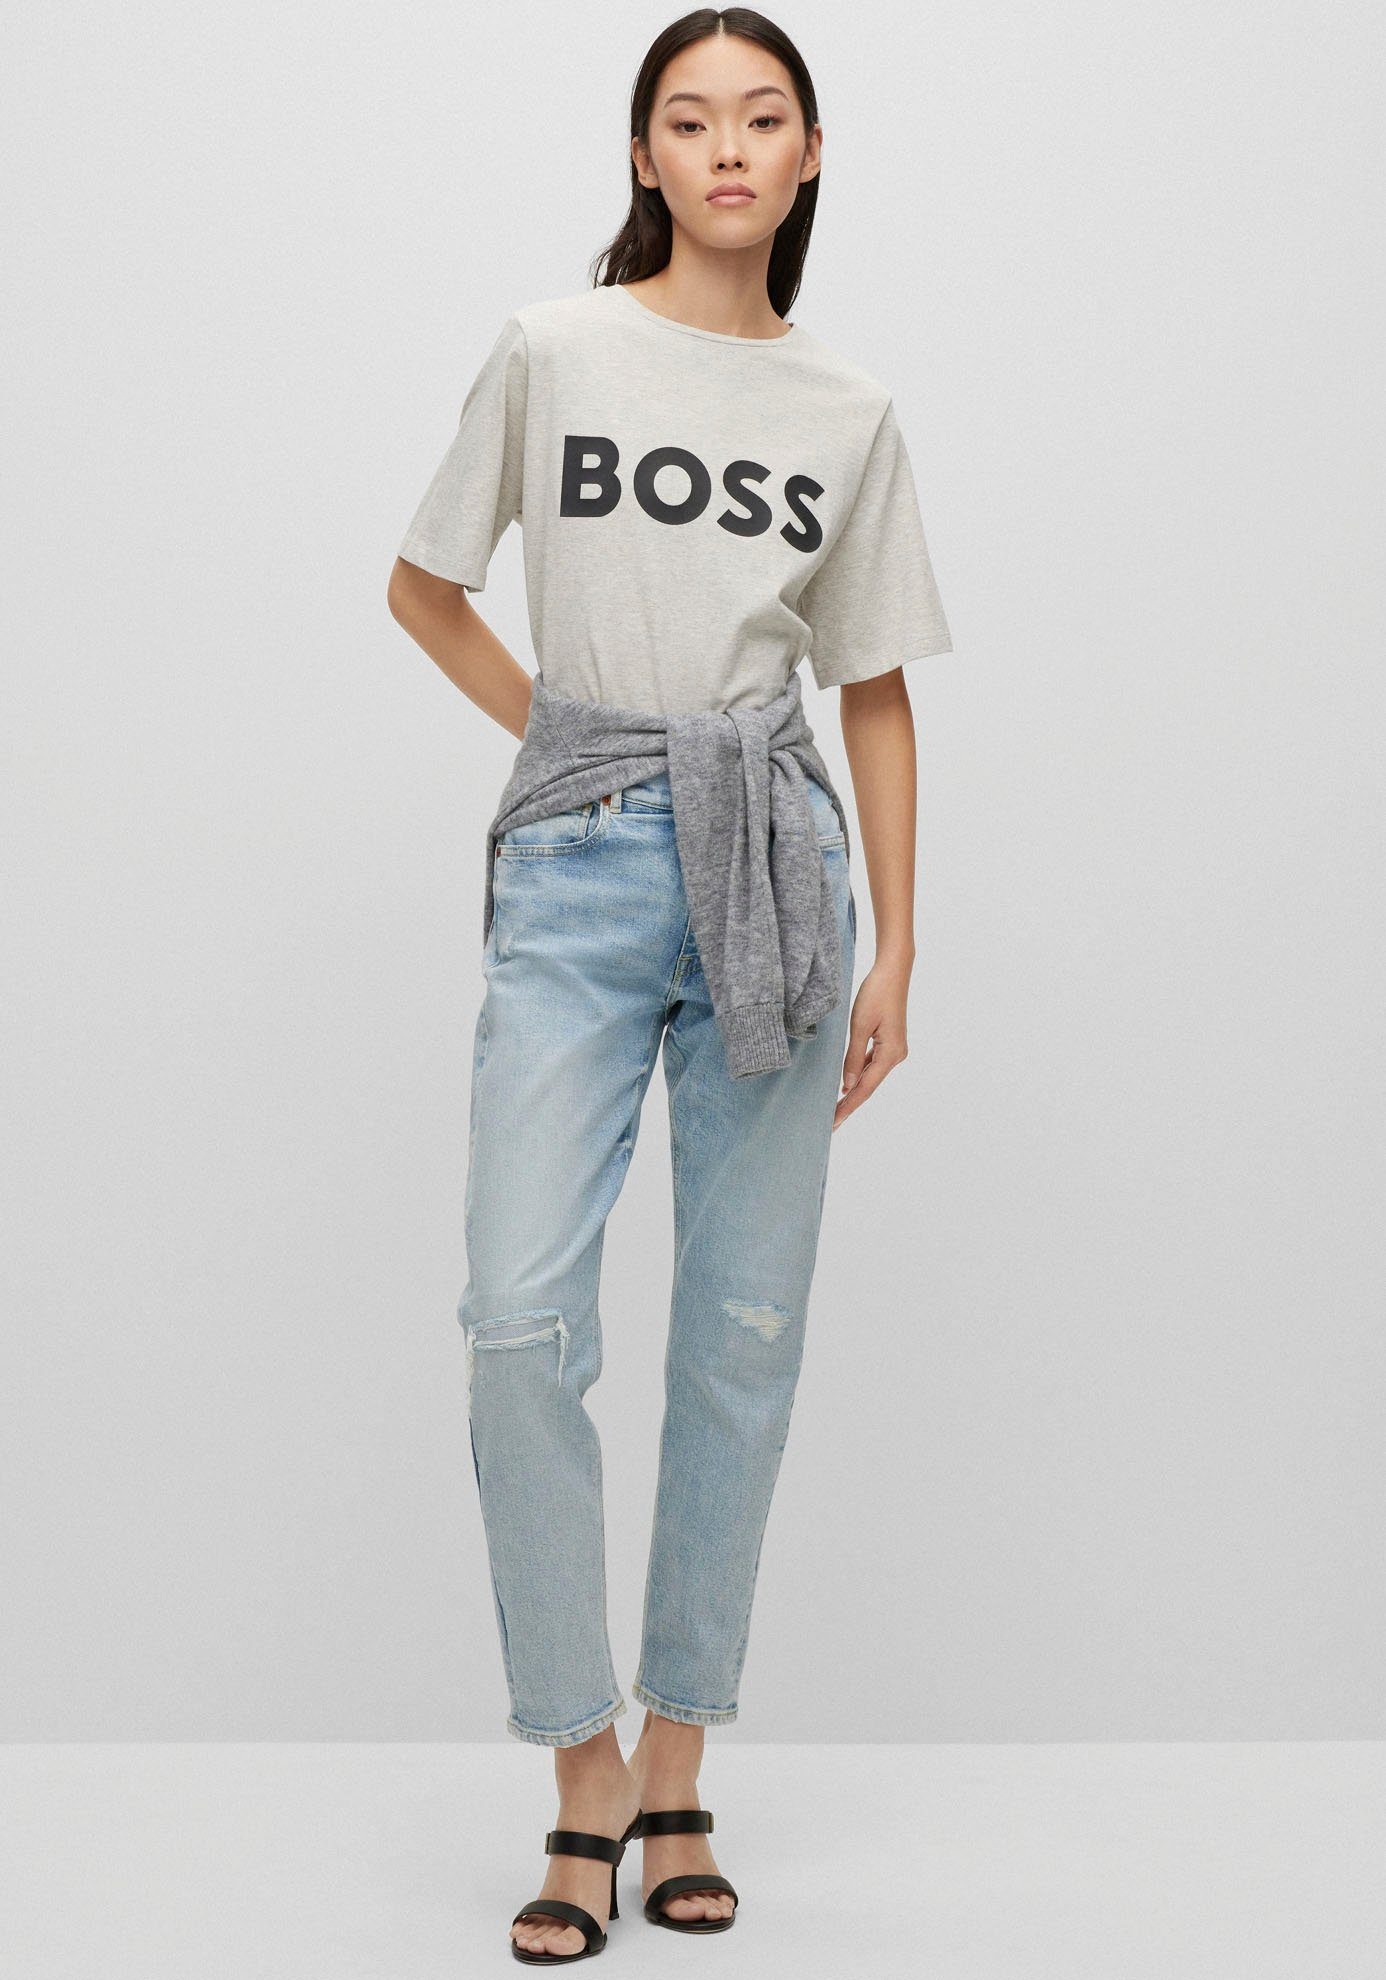 BOSS-Kontrastband innen T-Shirt am mit BOSS Grey Open ORANGE Ausschnitt